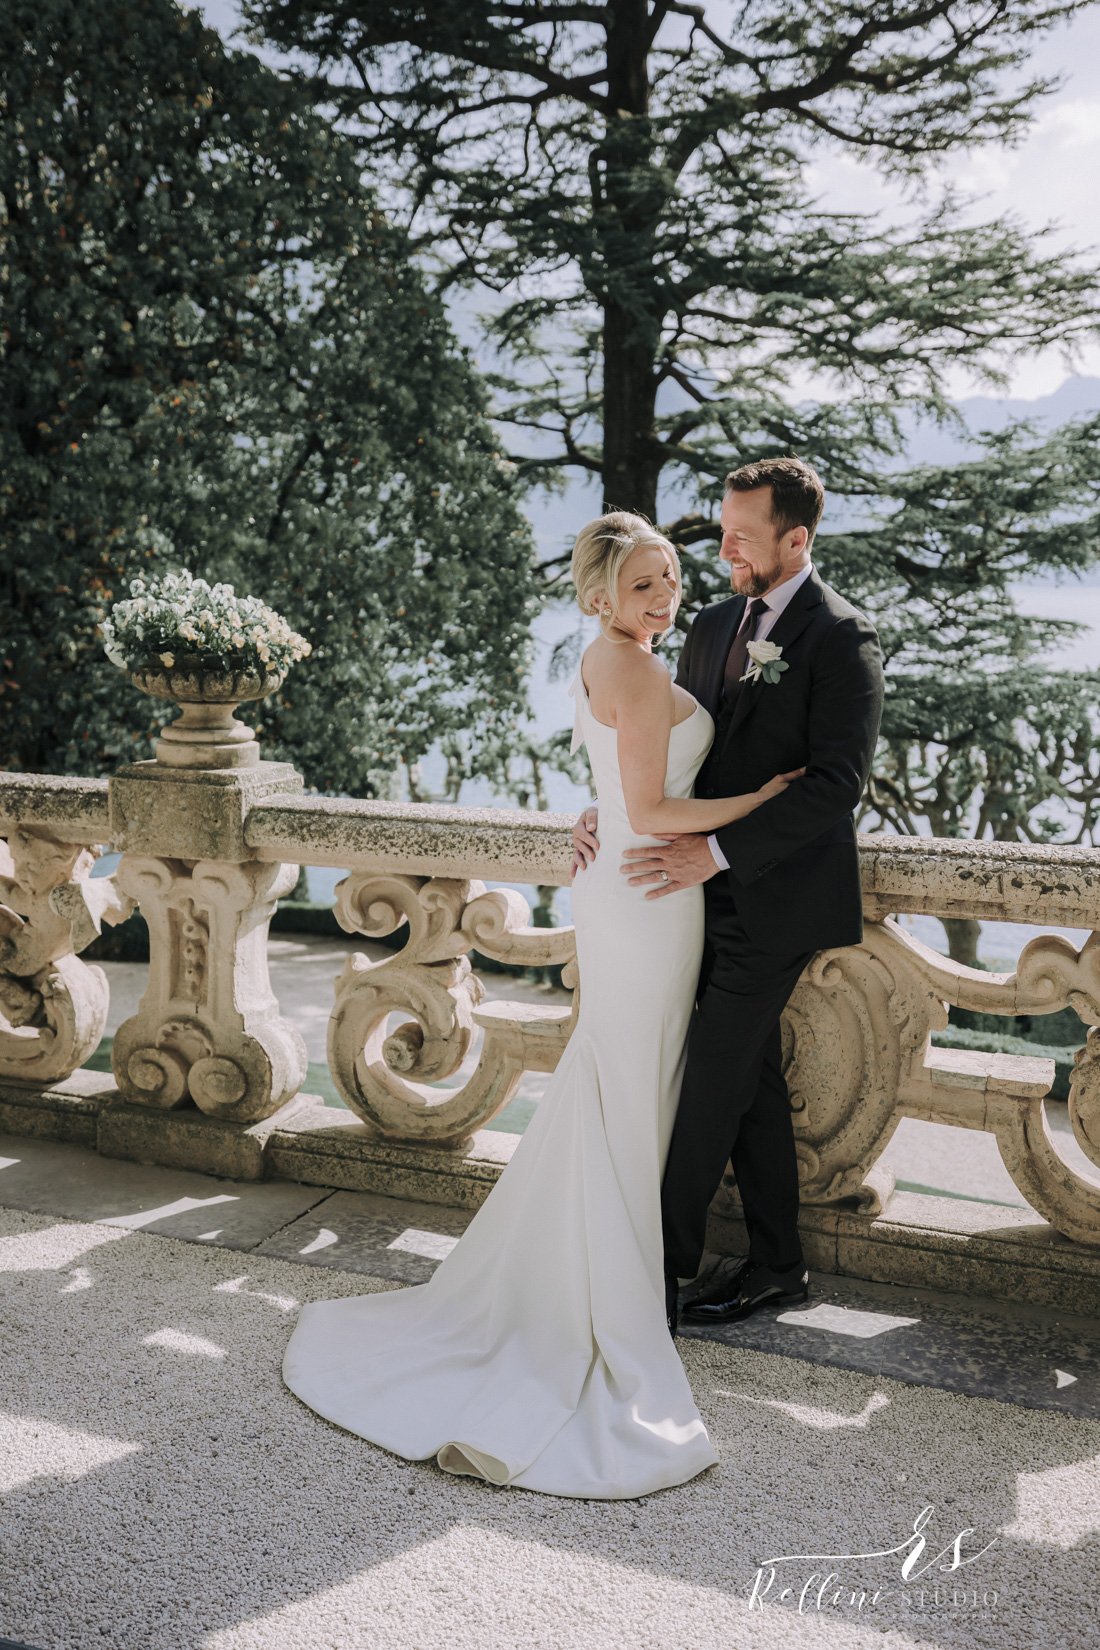 wedding photographer villa Balbianello Lake Como